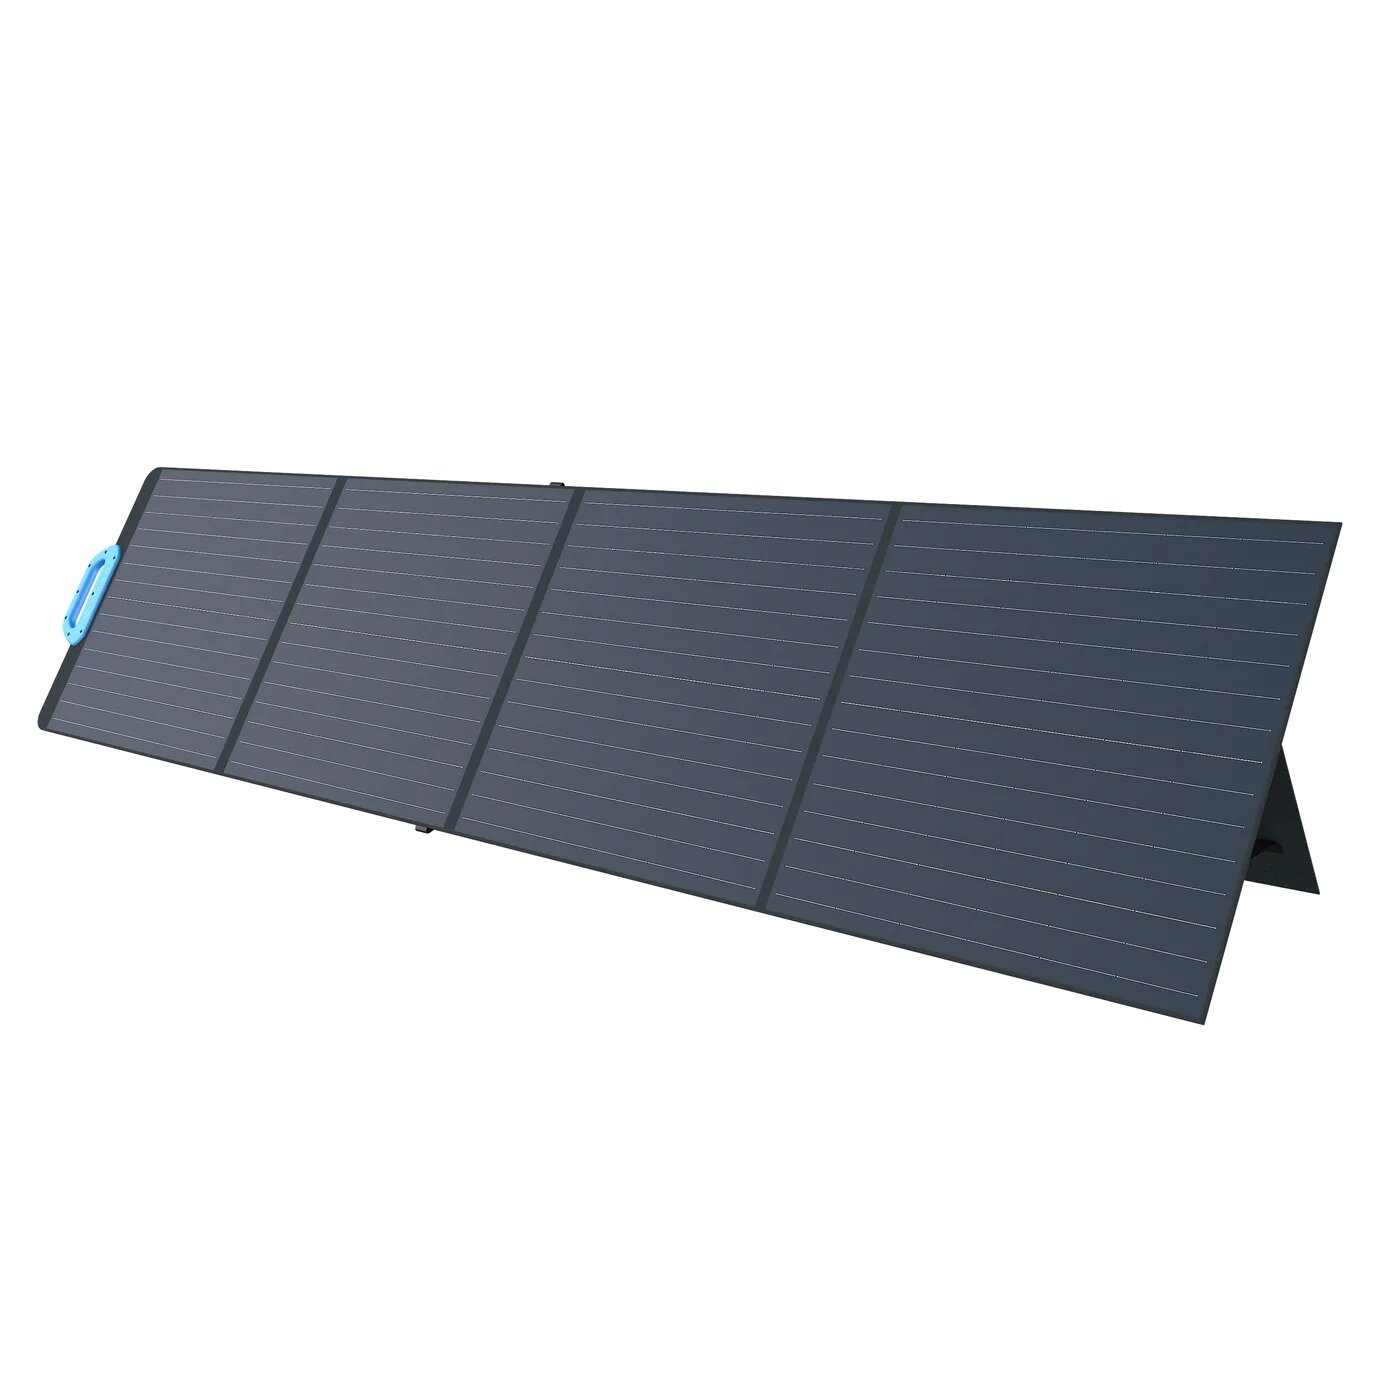 【EU直販】BLUETTI PV200 200W ソーラーパネル ポータブル 折りたたみ式 IP54 防水 高変換効率 ソーラーチャージャー MCフォーコネクター付き